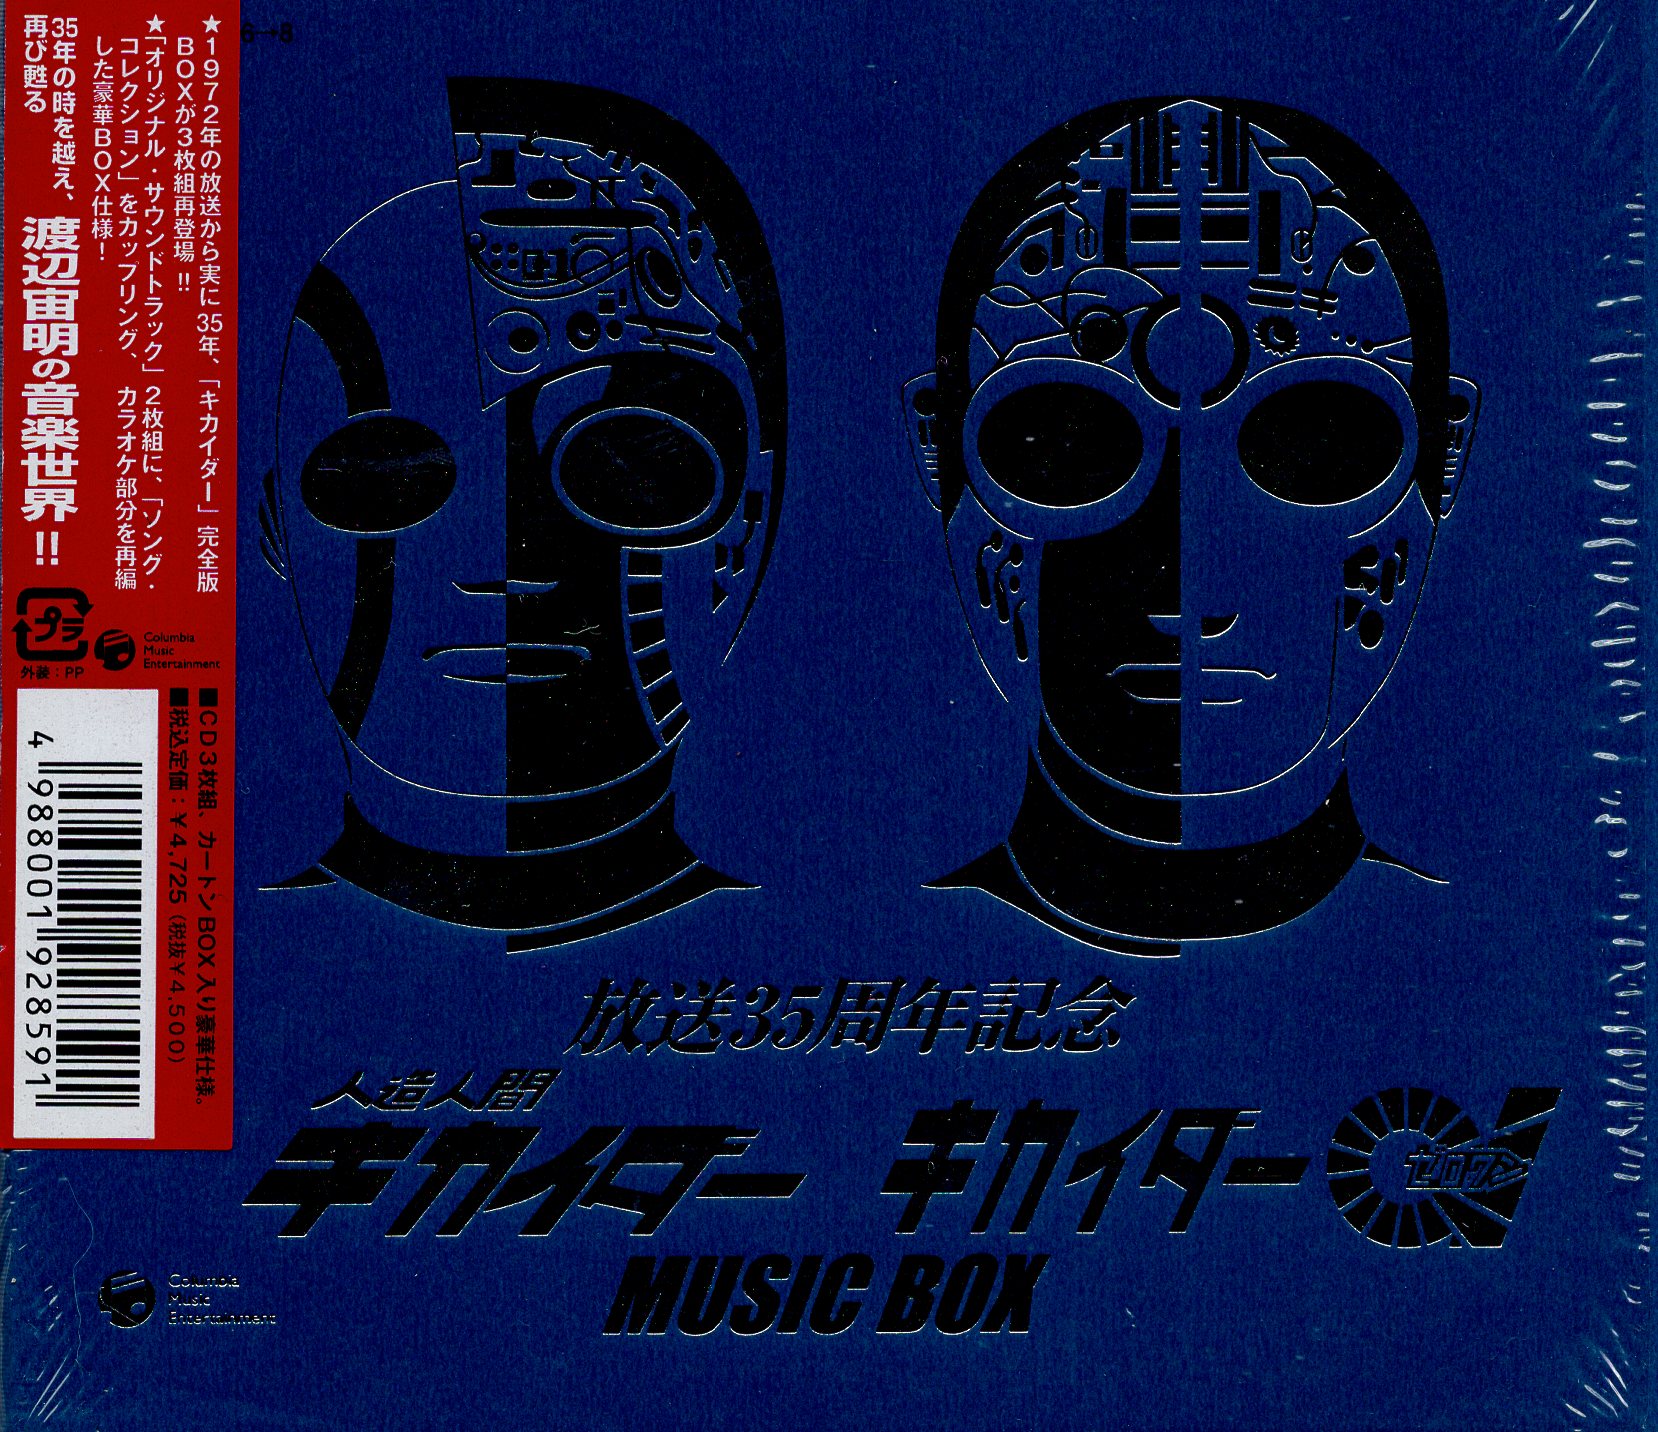 放送35周年記念人造人間キカイダー キカイダー01 MUSIC BOX-